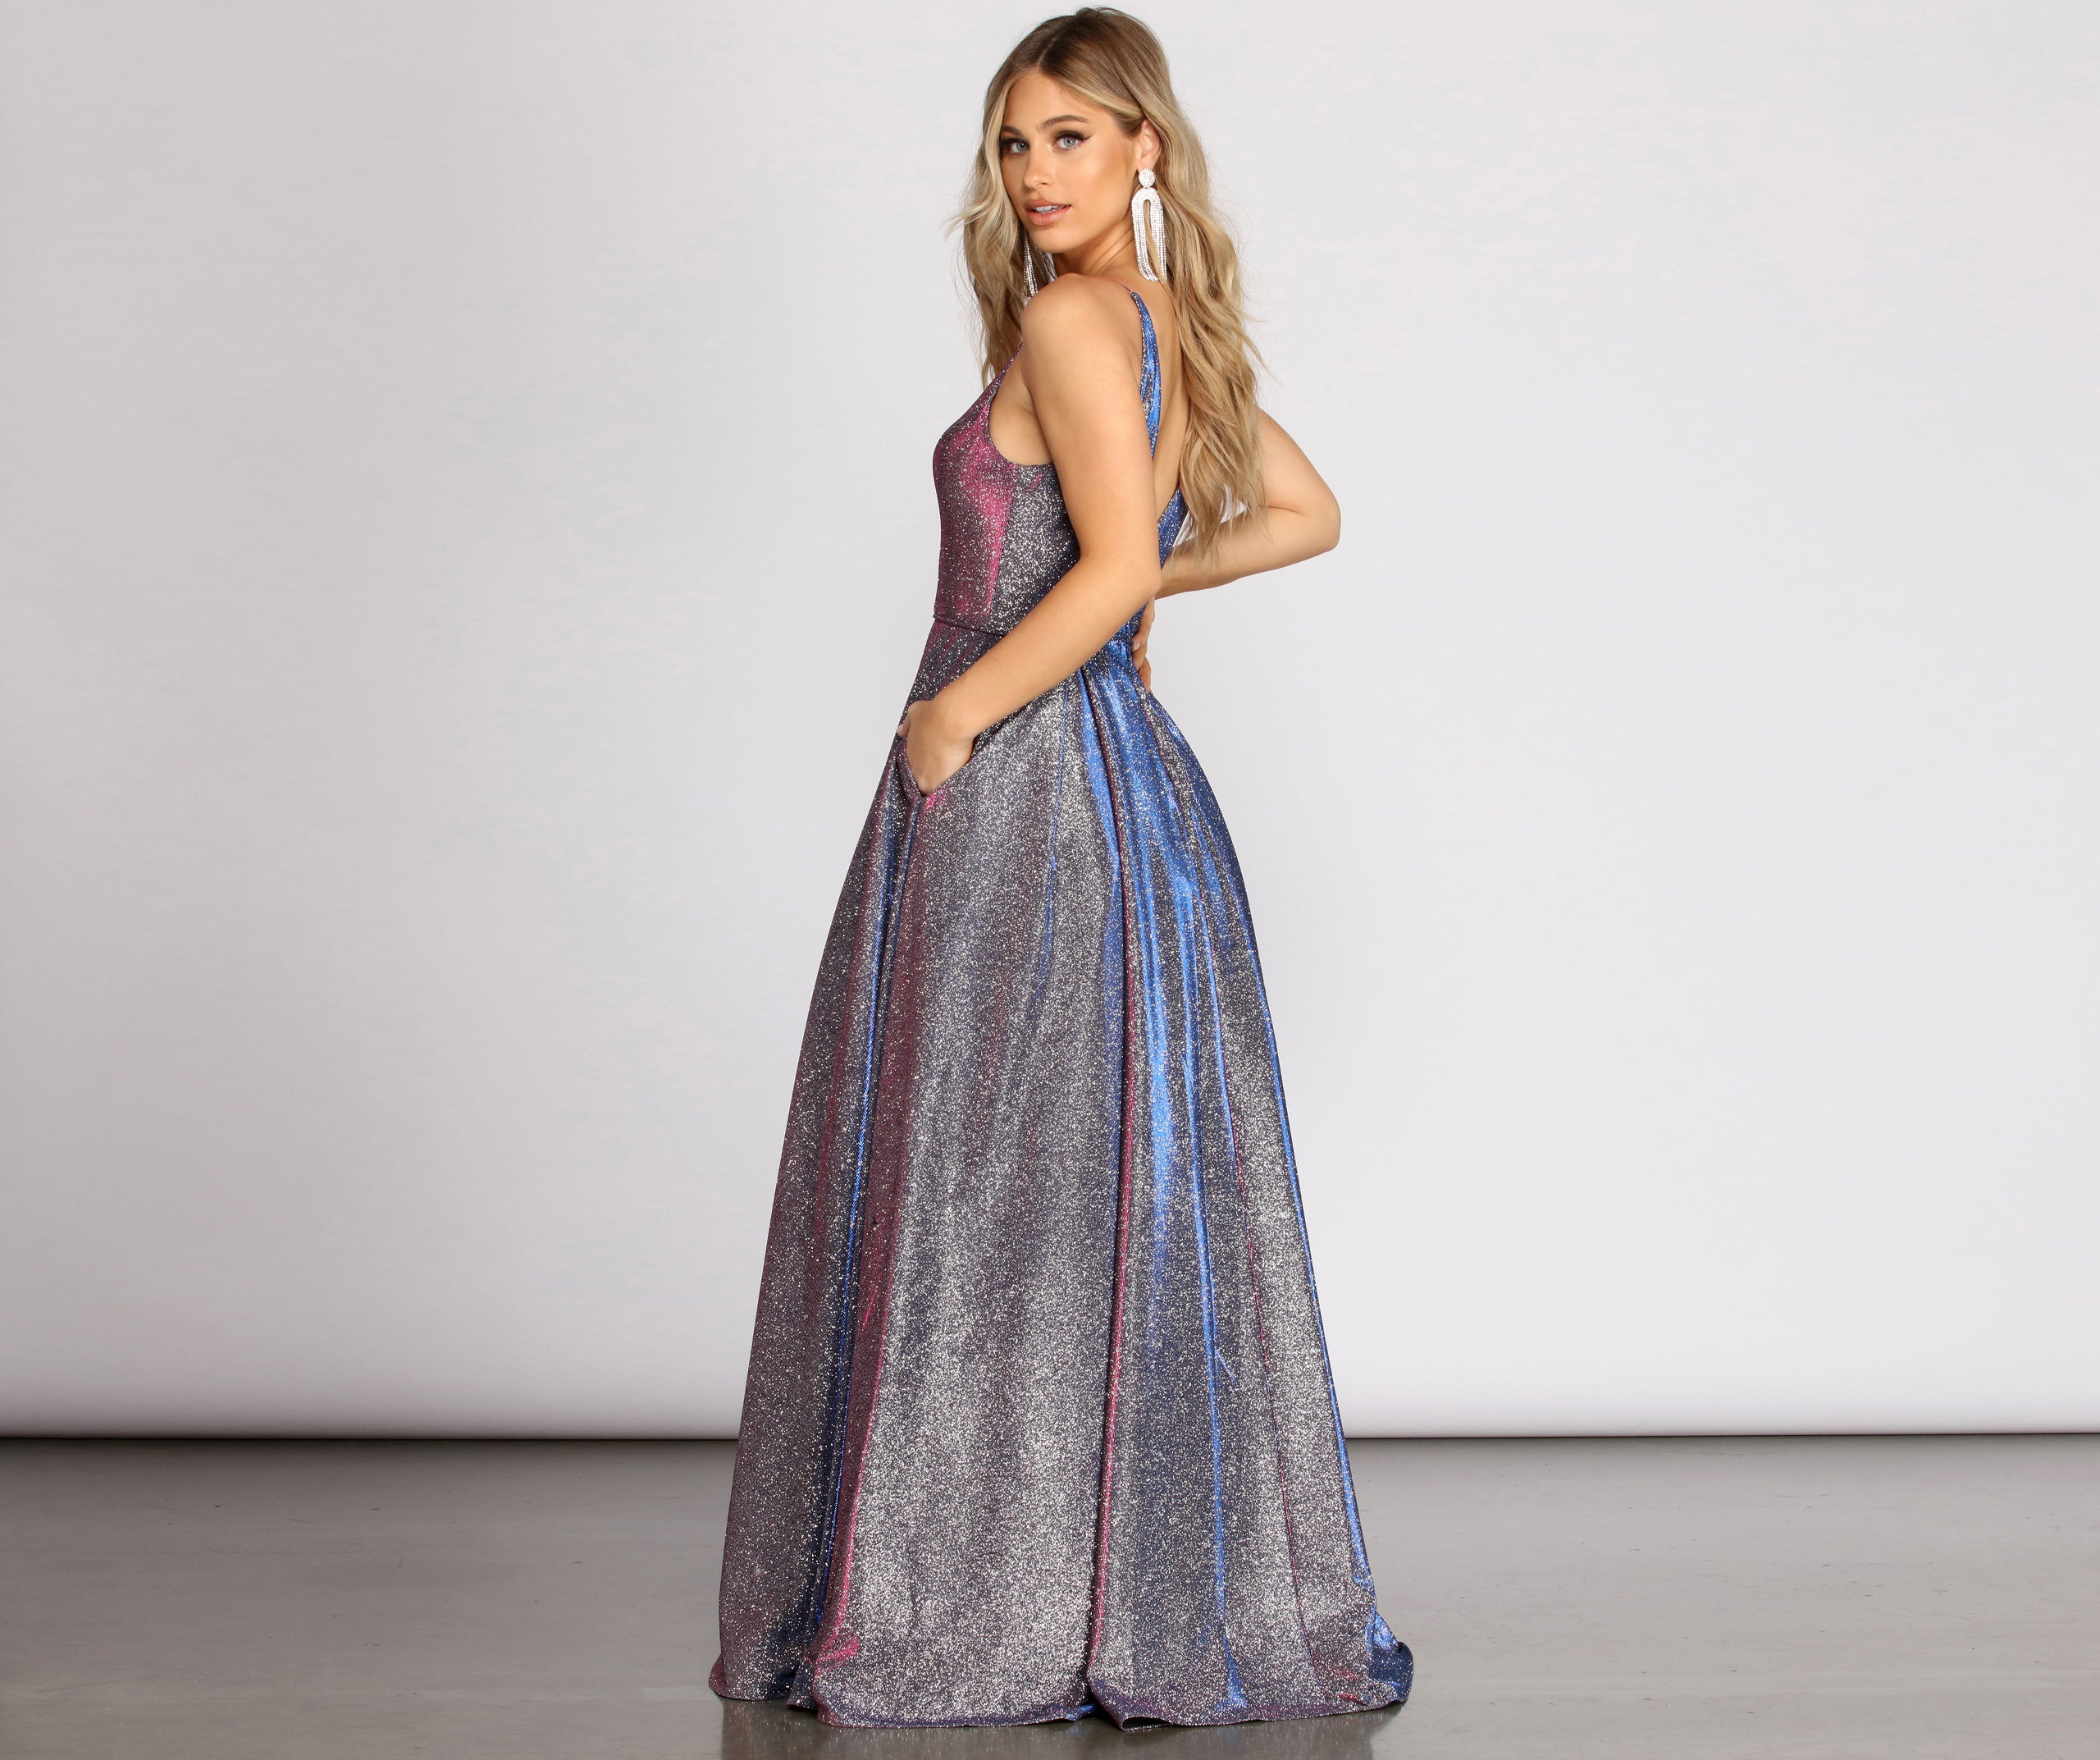 Cora Glitter Ball Gown